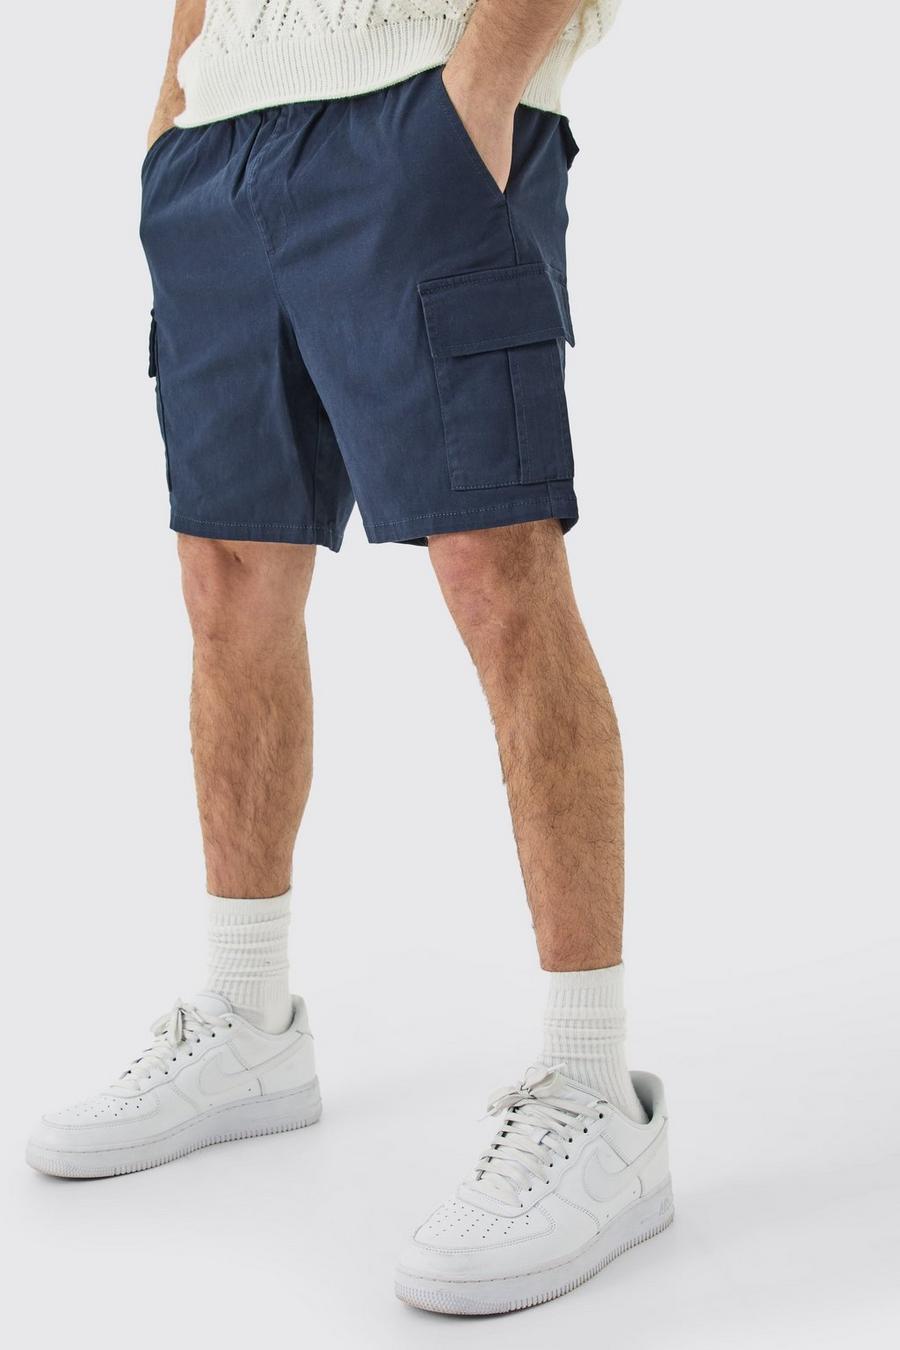 Pantaloncini Cargo Slim Fit blu navy con vita elasticizzata